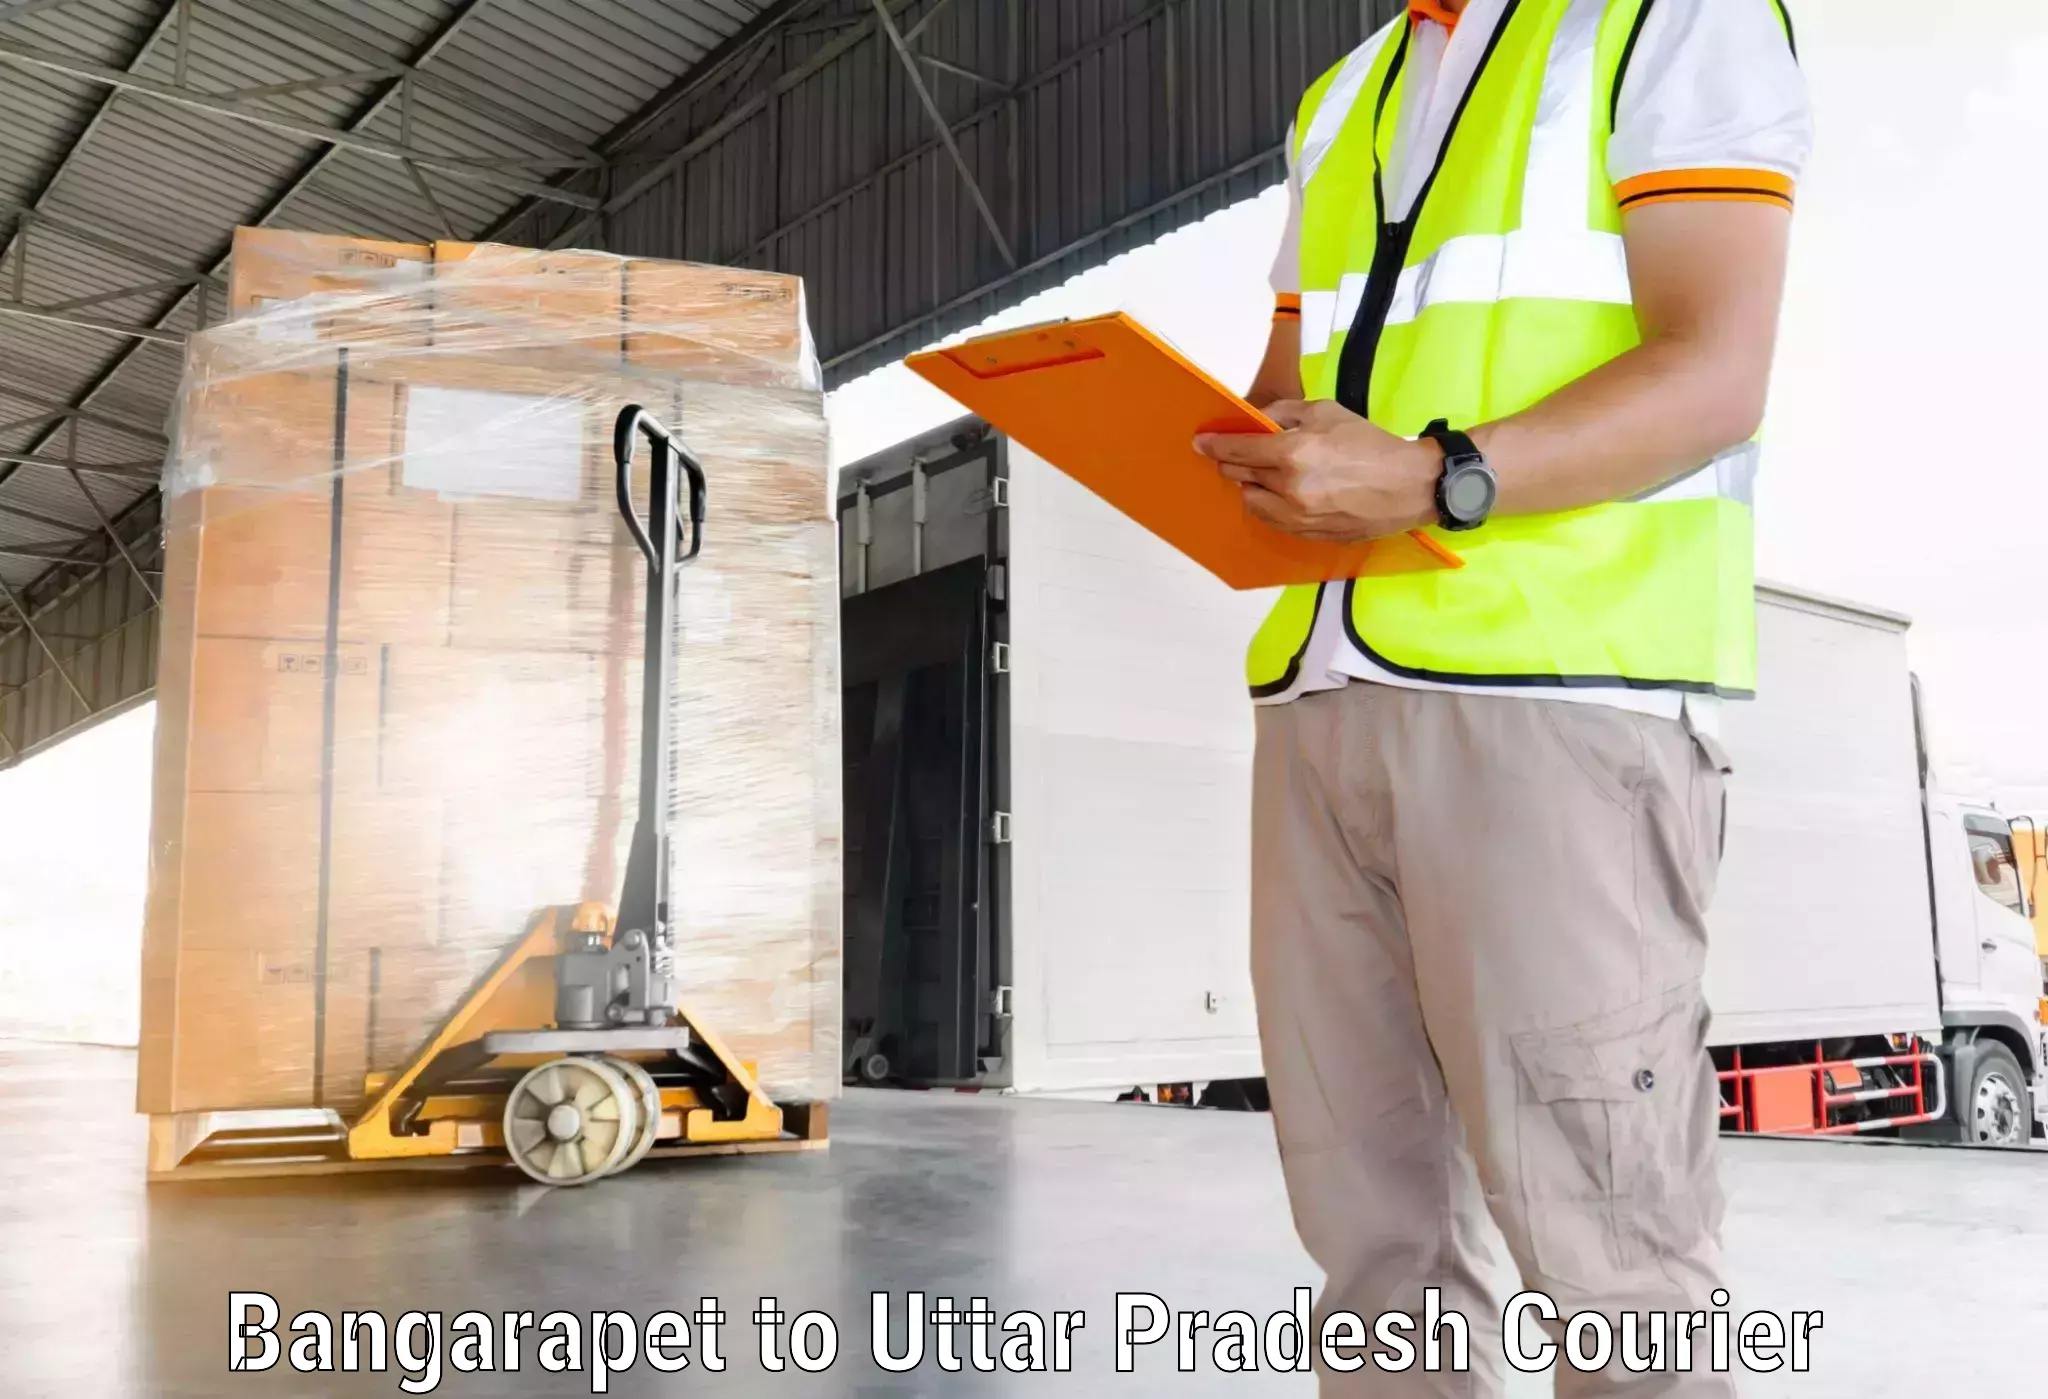 Nationwide shipping capabilities Bangarapet to Chandwak